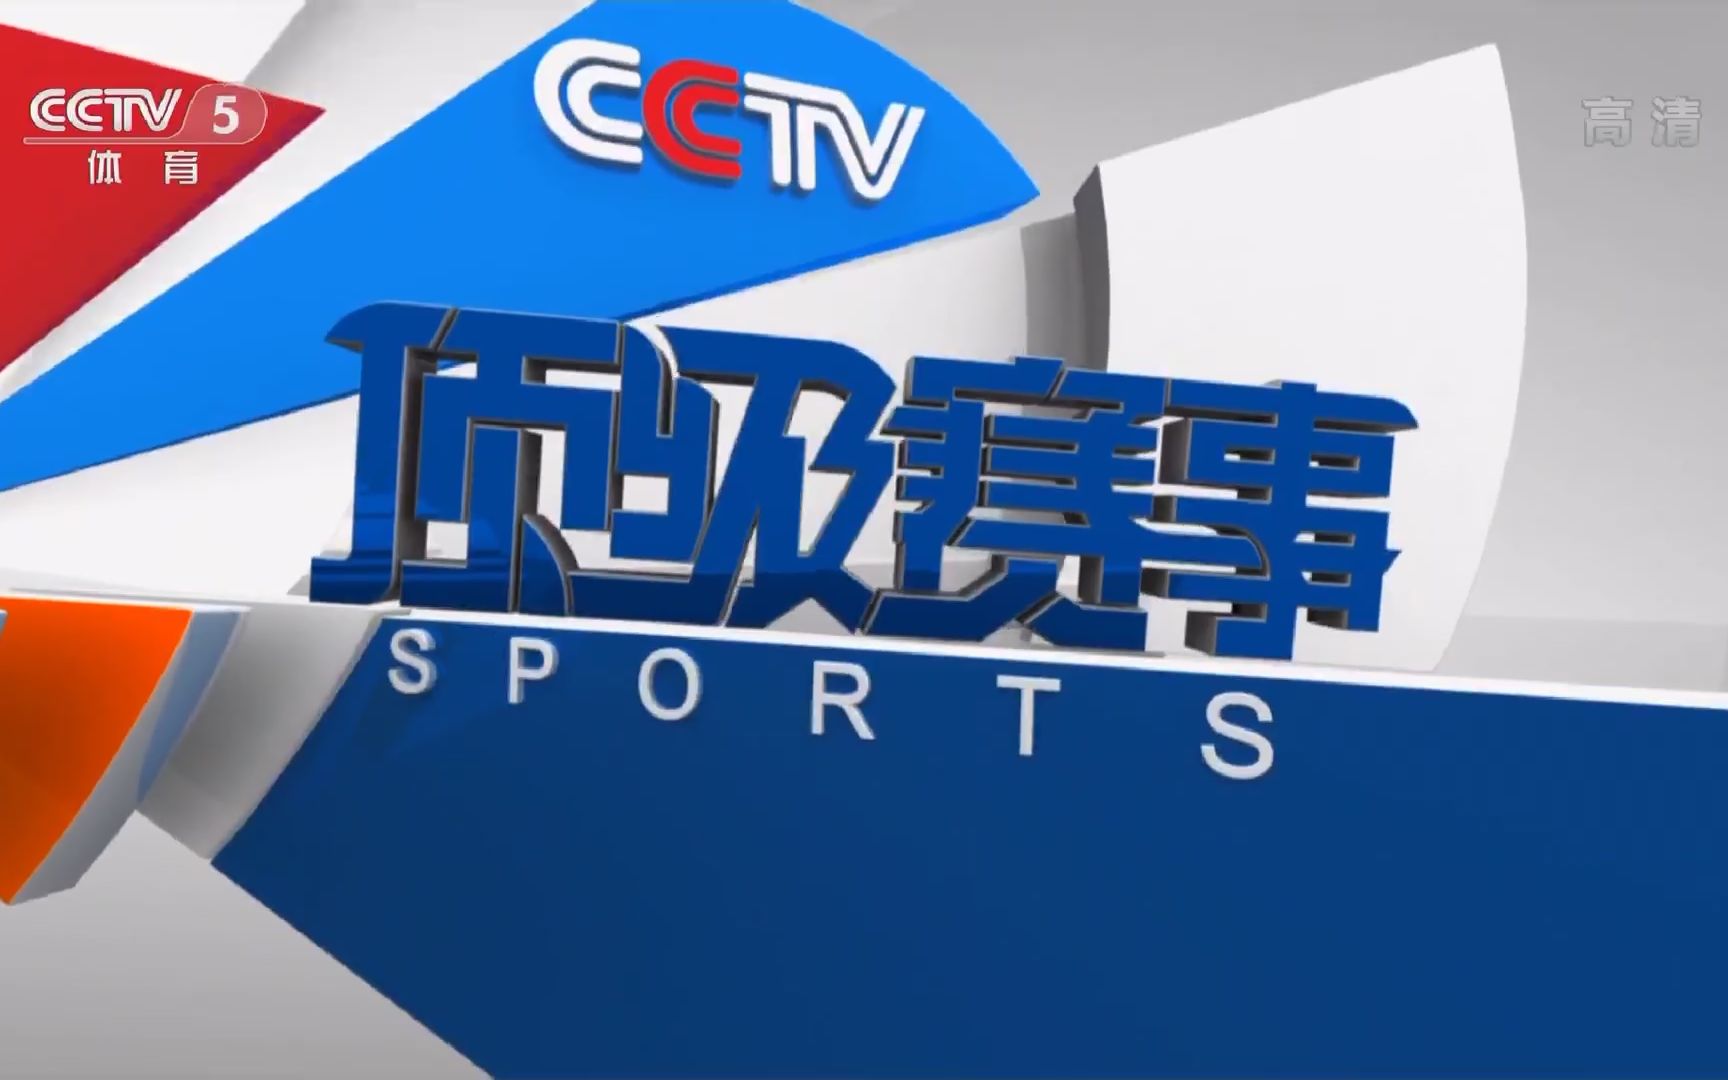 【广播电视】cctv5体育频道2013版《顶级赛事》片头